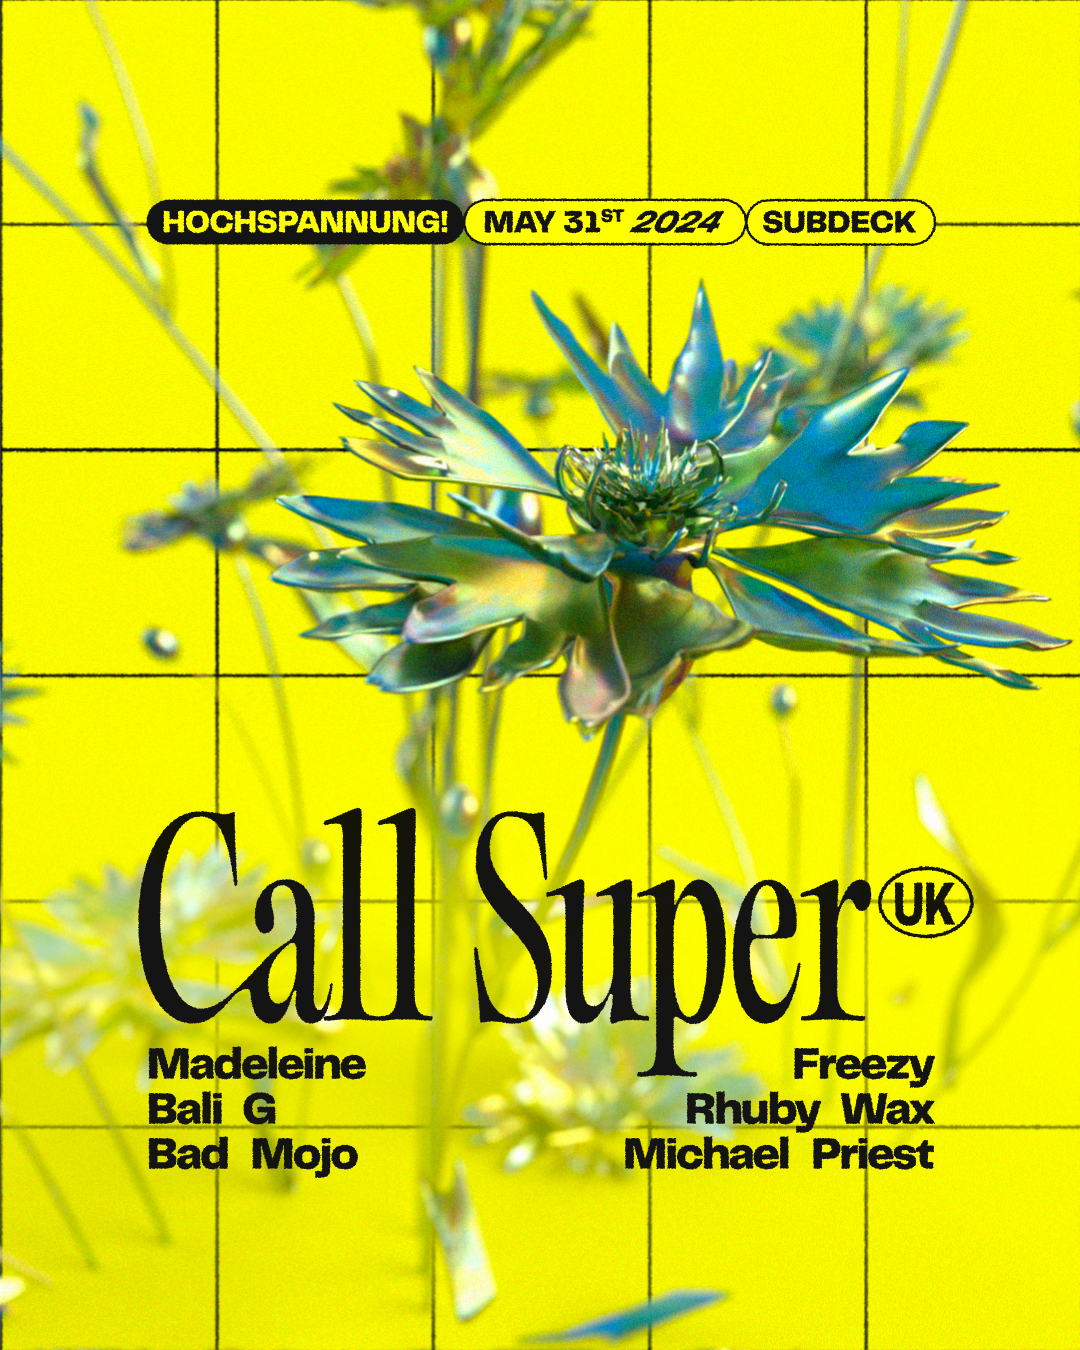 Hochspannung! with Call Super (UK) ✦ Madeleine ✦ Freezy  - フライヤー表